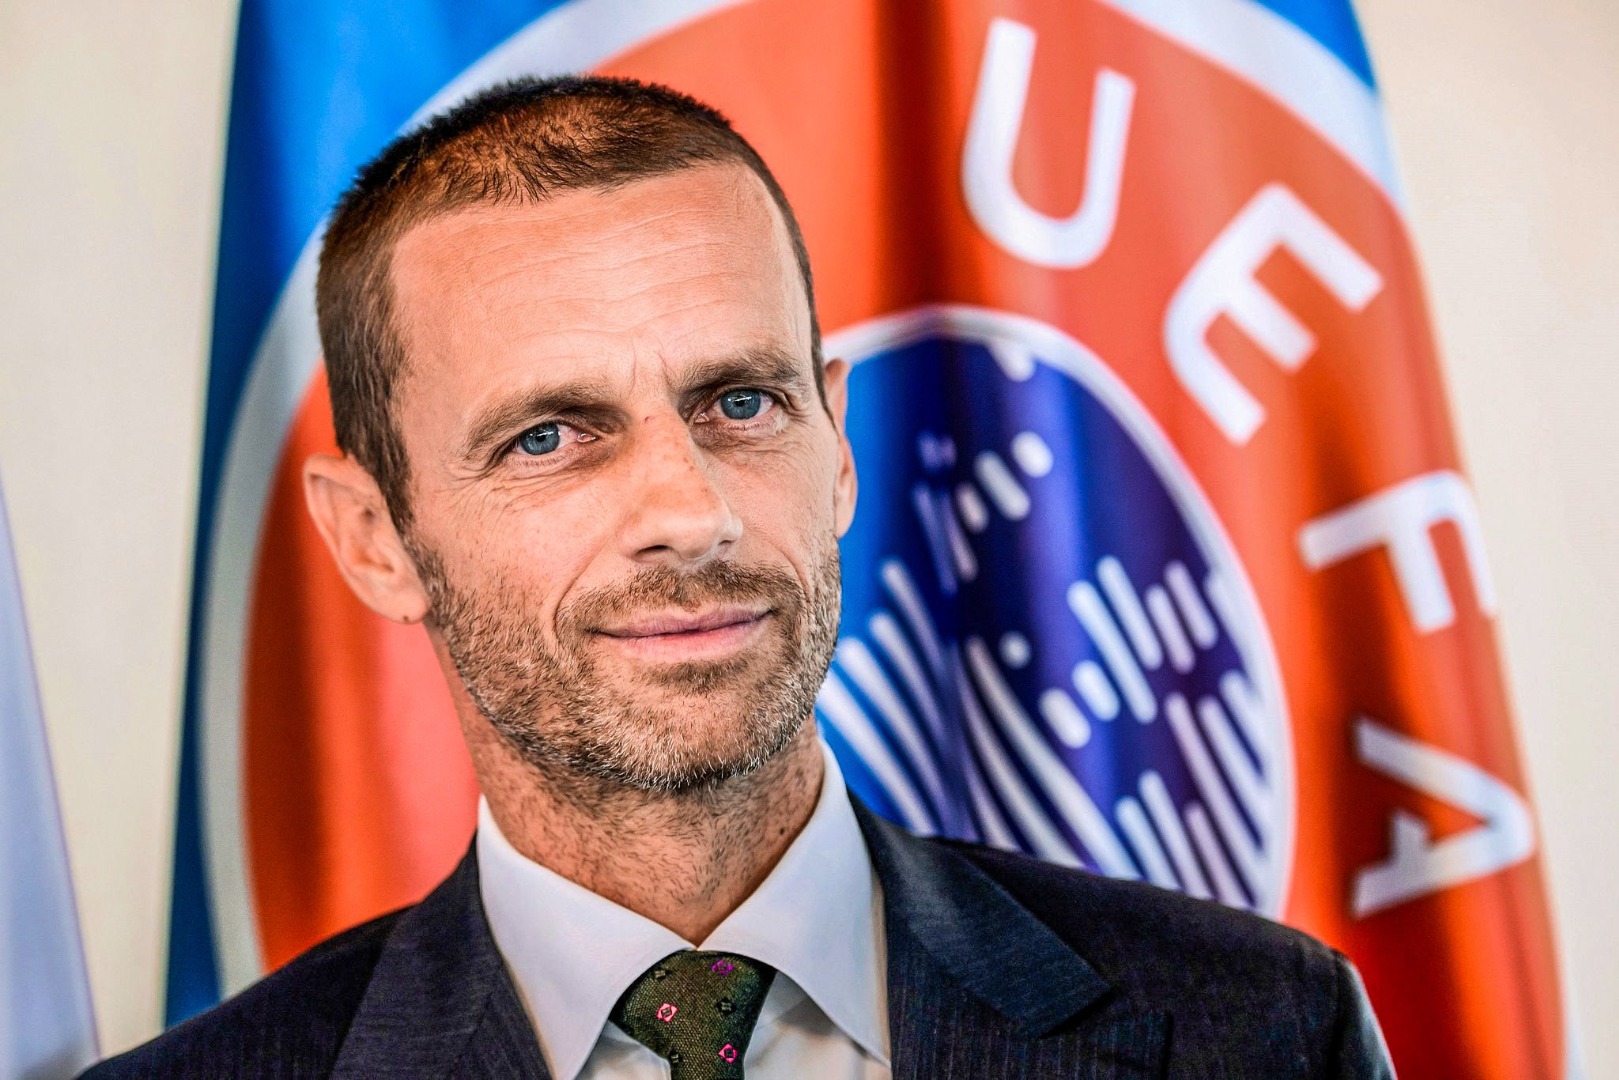 UEFA'da tek adam! Ceferin başkanlık seçimine rakipsiz giriyor